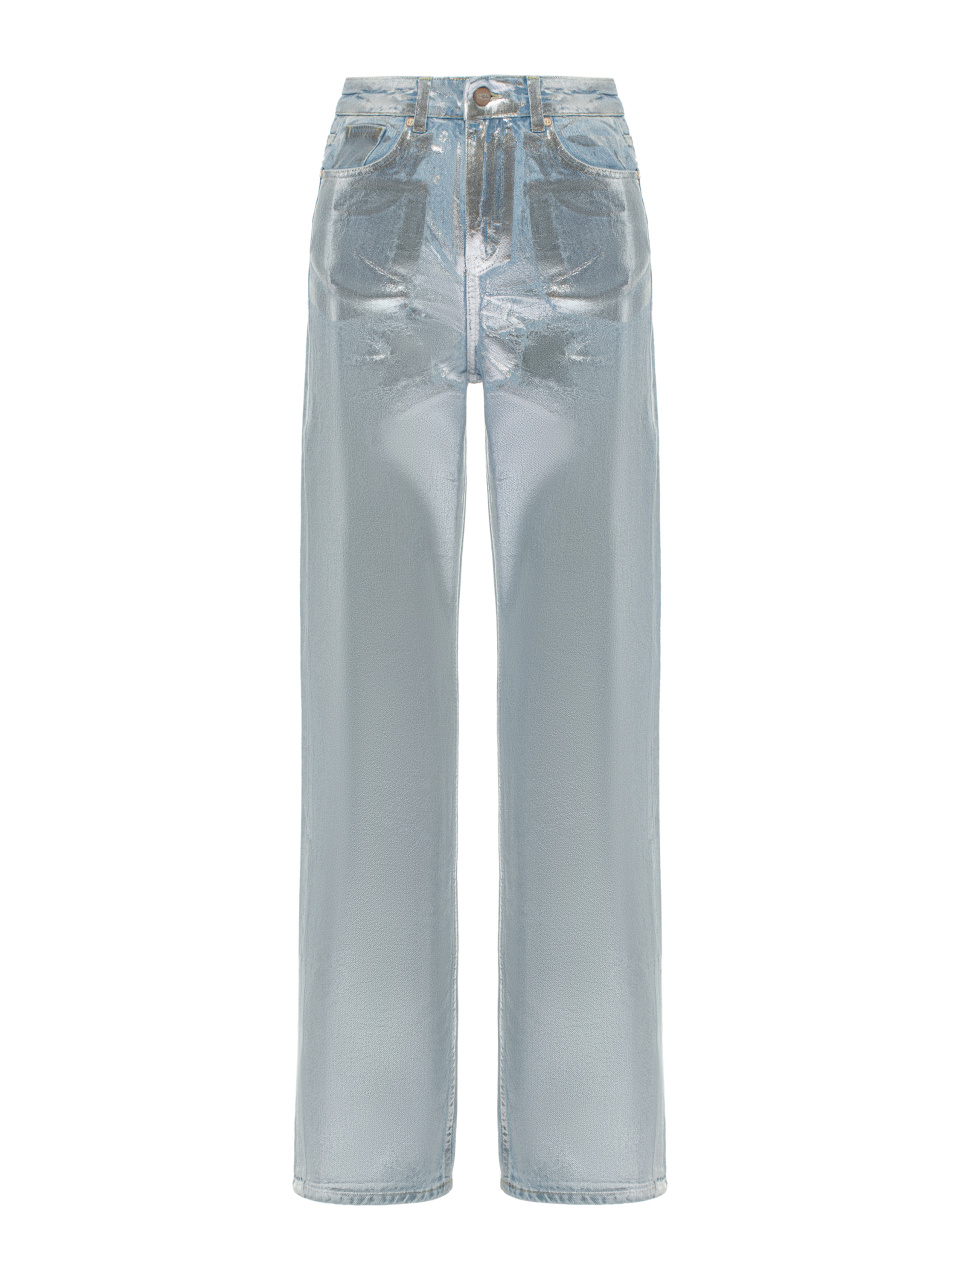 Прямые джинсы голубого цвета с серебряным напылением, 1